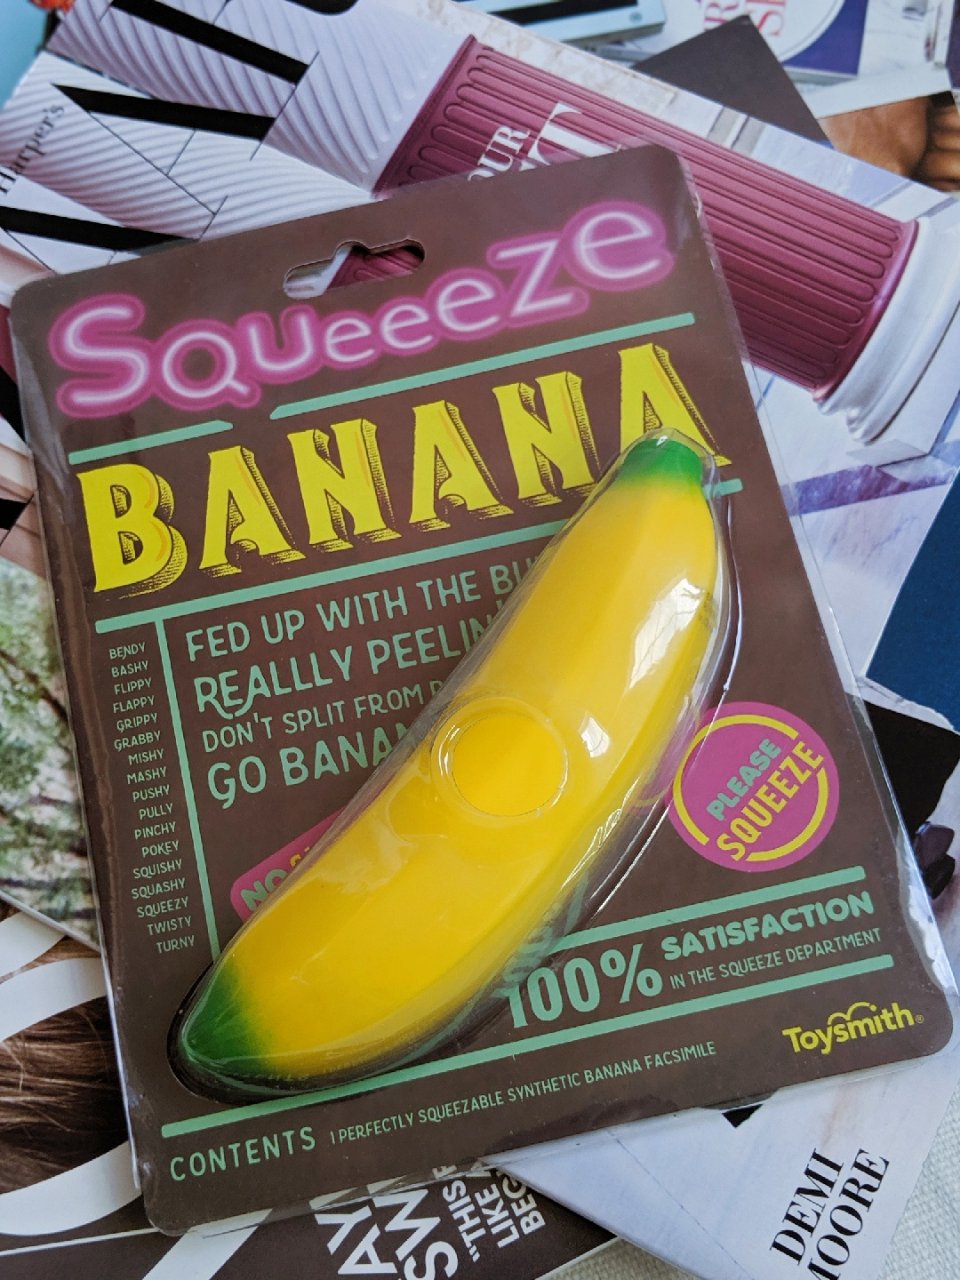 UO的解压小物：可挤压的香蕉...